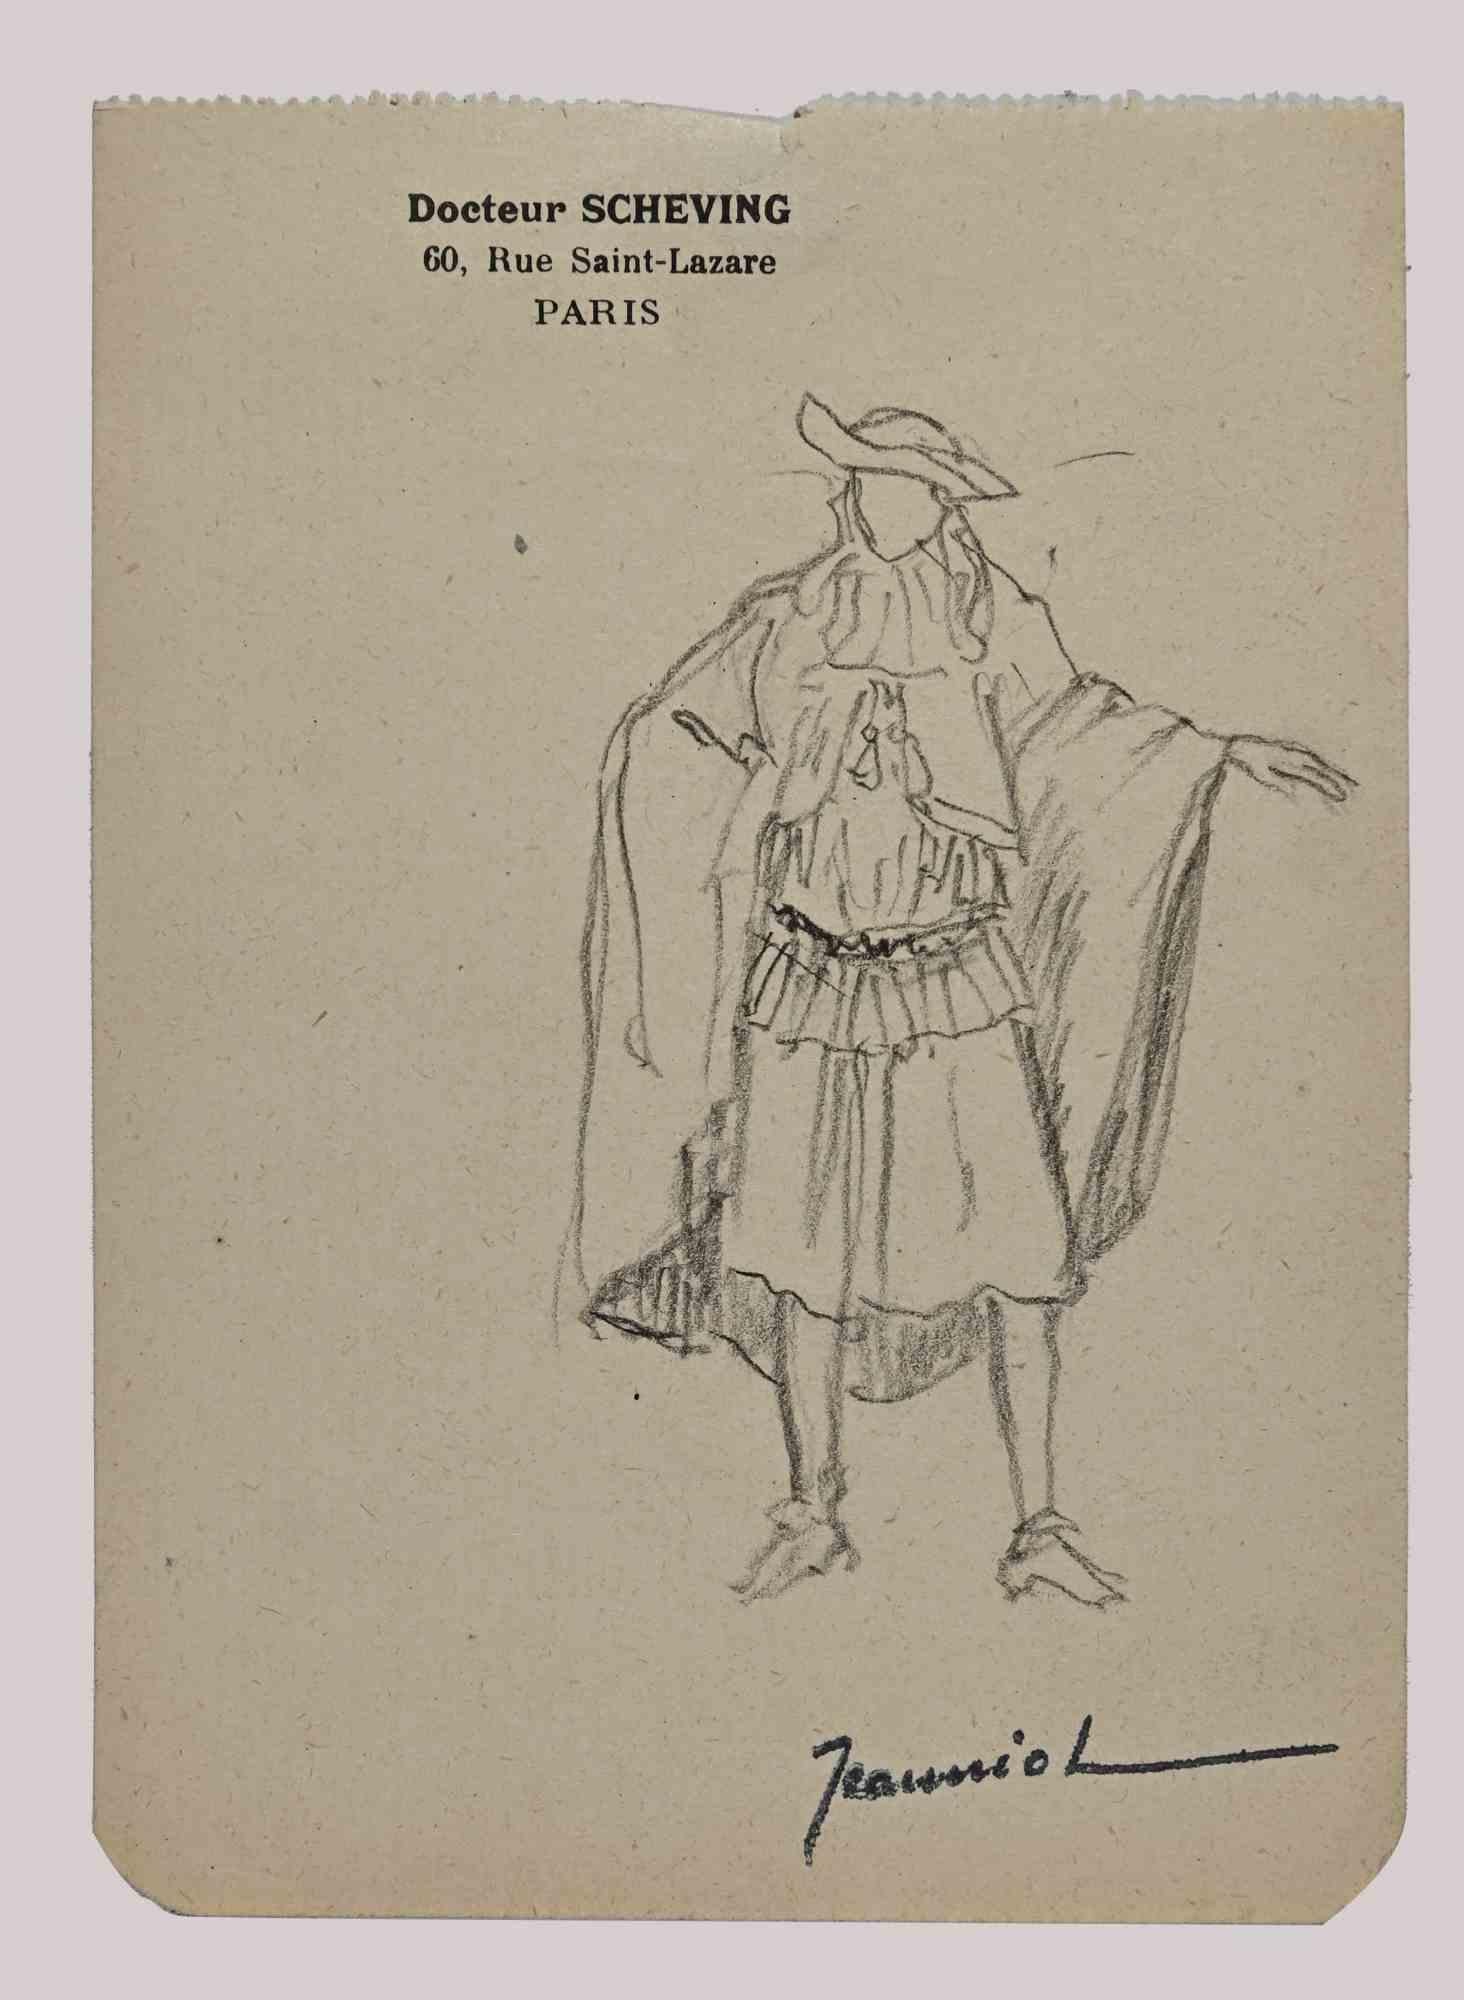 Der Mensch ist eine Original-Zeichnung auf Papier des Malers Pierre Georges Jeanniot (1848-1934).

Zeichnung mit Bleistift.

Handsigniert auf der Unterseite.

Gute Bedingungen bis auf die verbrauchten Ränder.

Das Kunstwerk wird durch geschickte und